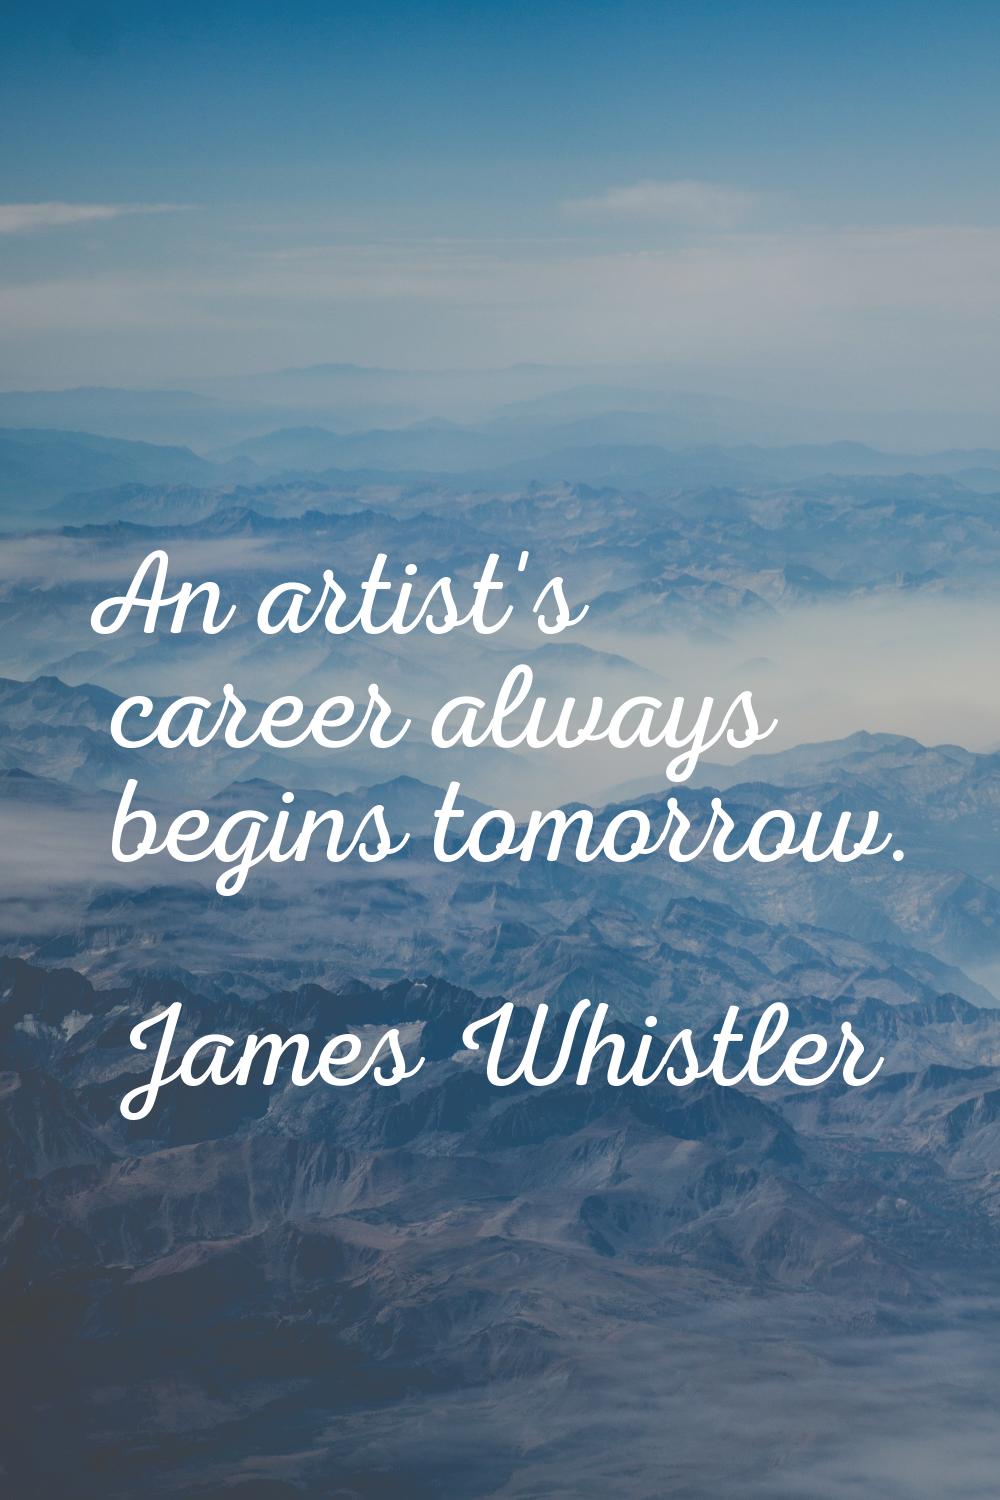 An artist's career always begins tomorrow.